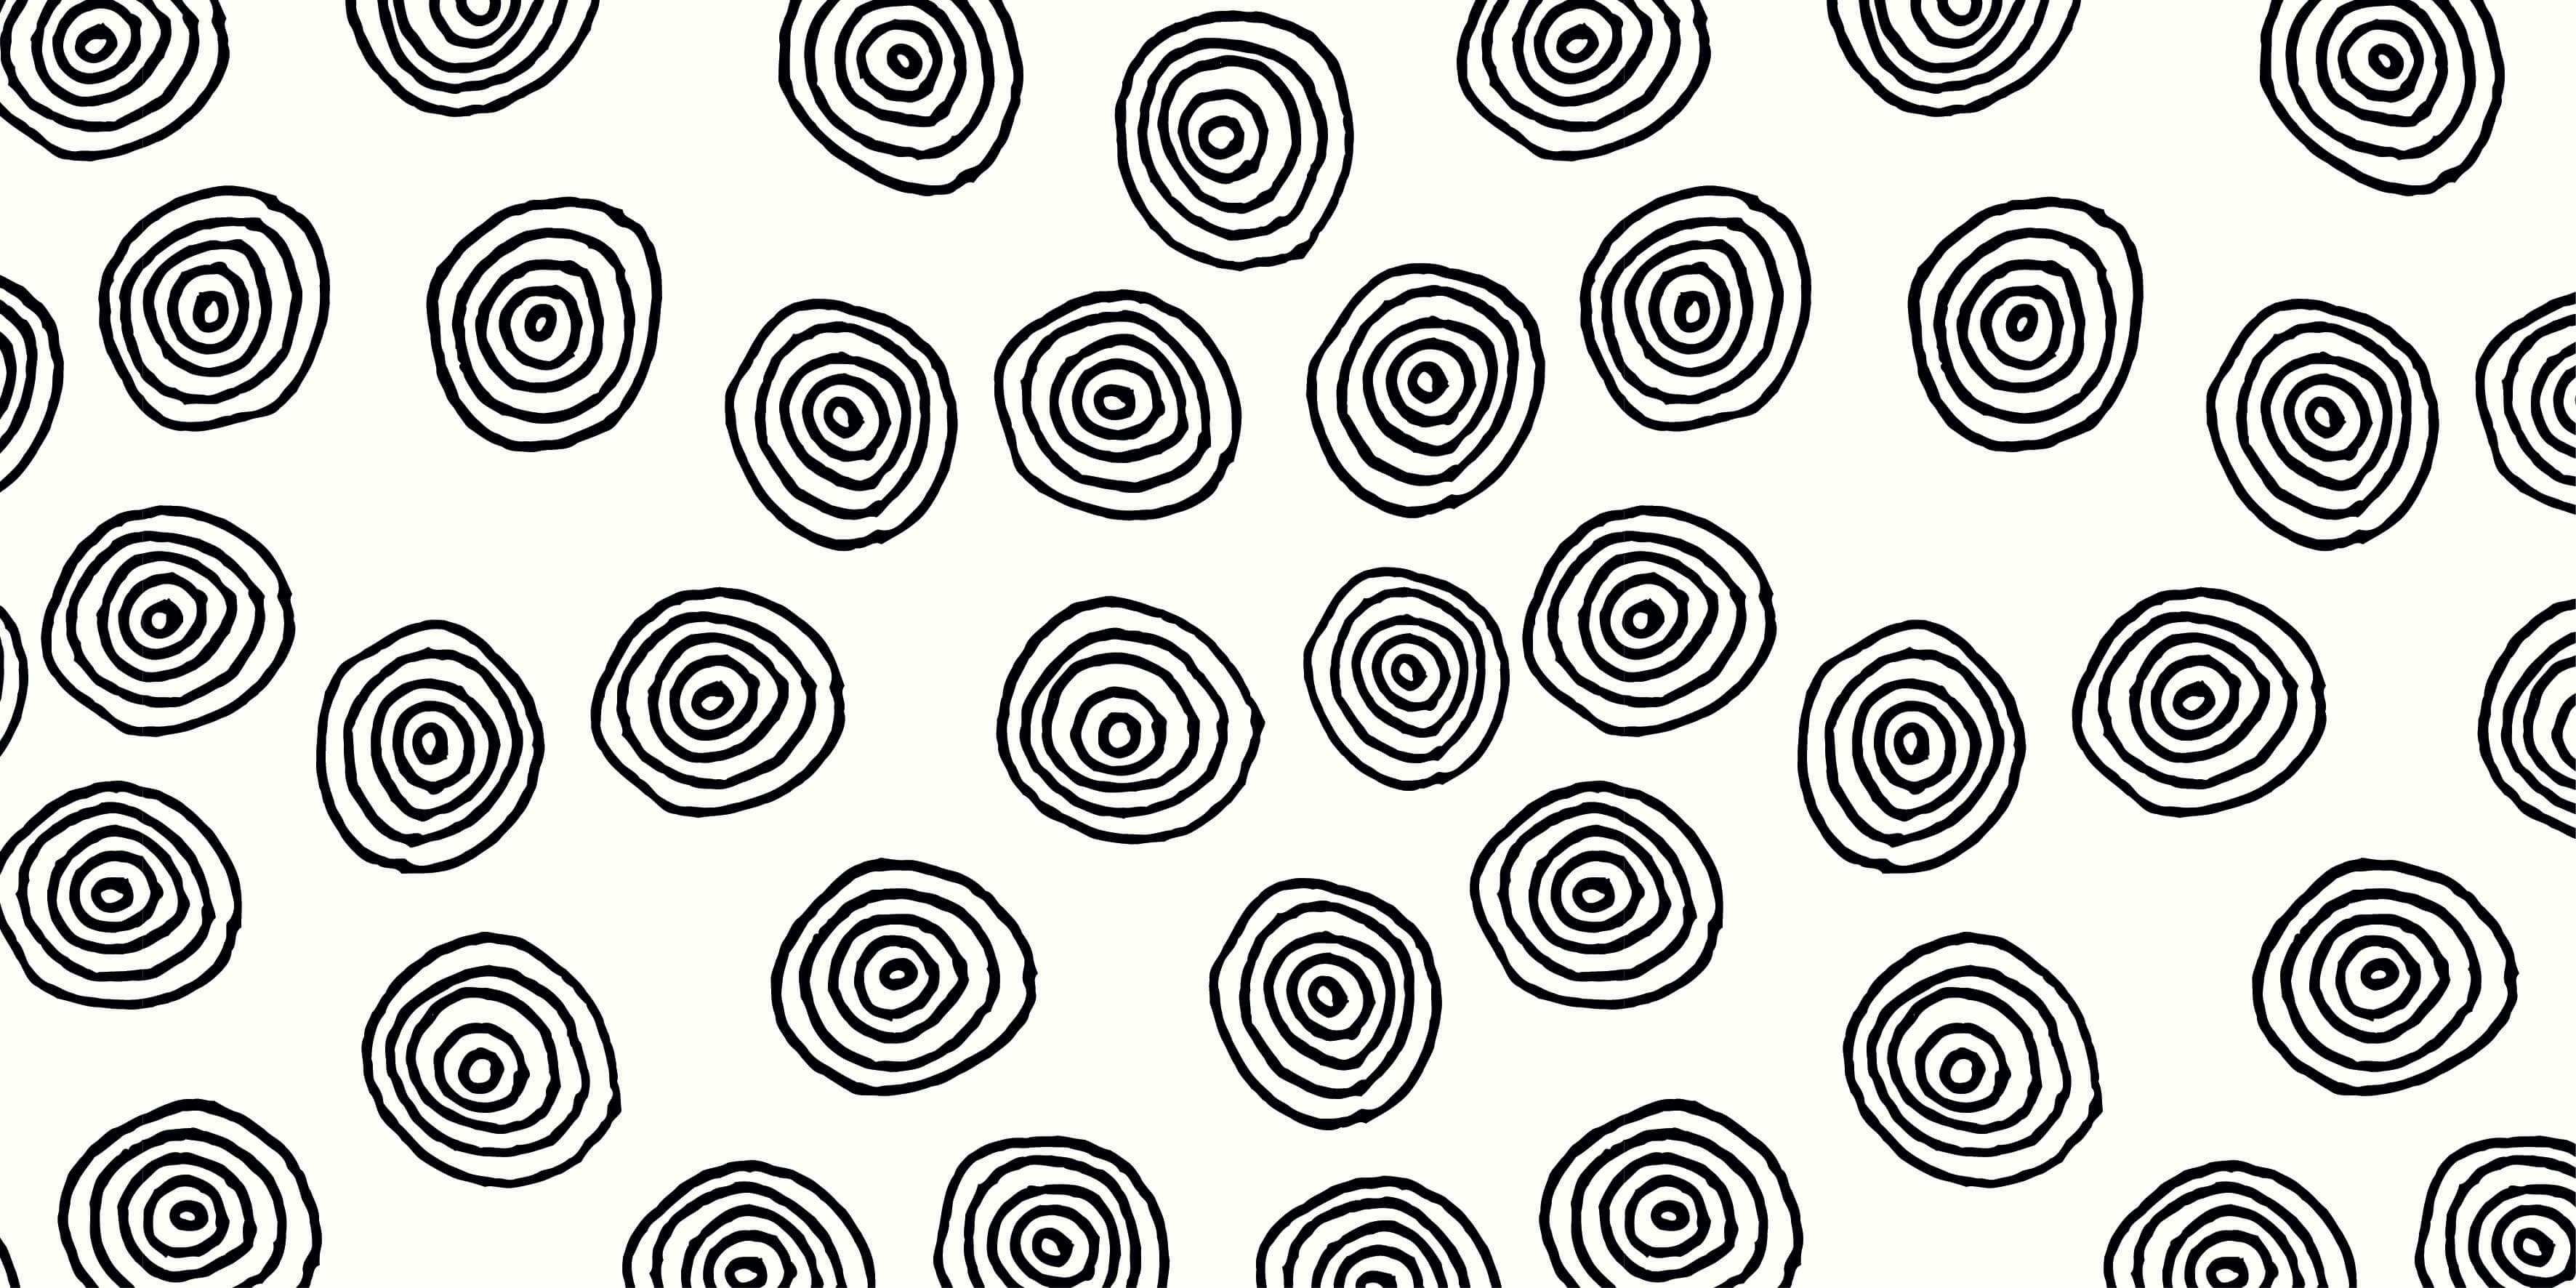 Abstracto - Papel pintado con Círculos abstractos en blanco y negro - Sala de ocio